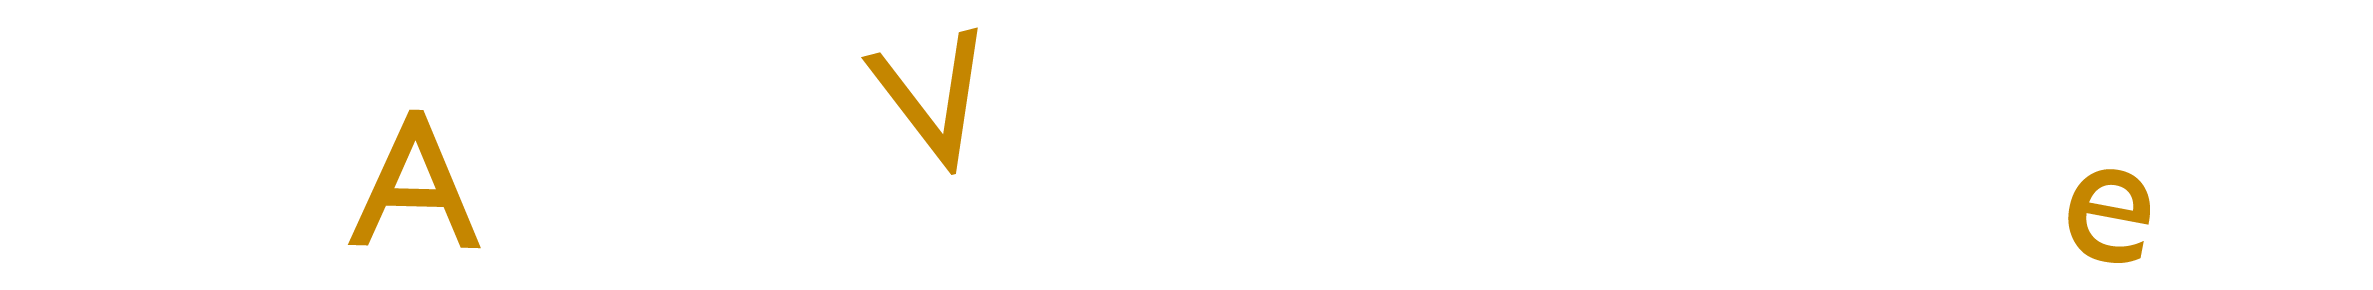 Ars Vitae Center Logo